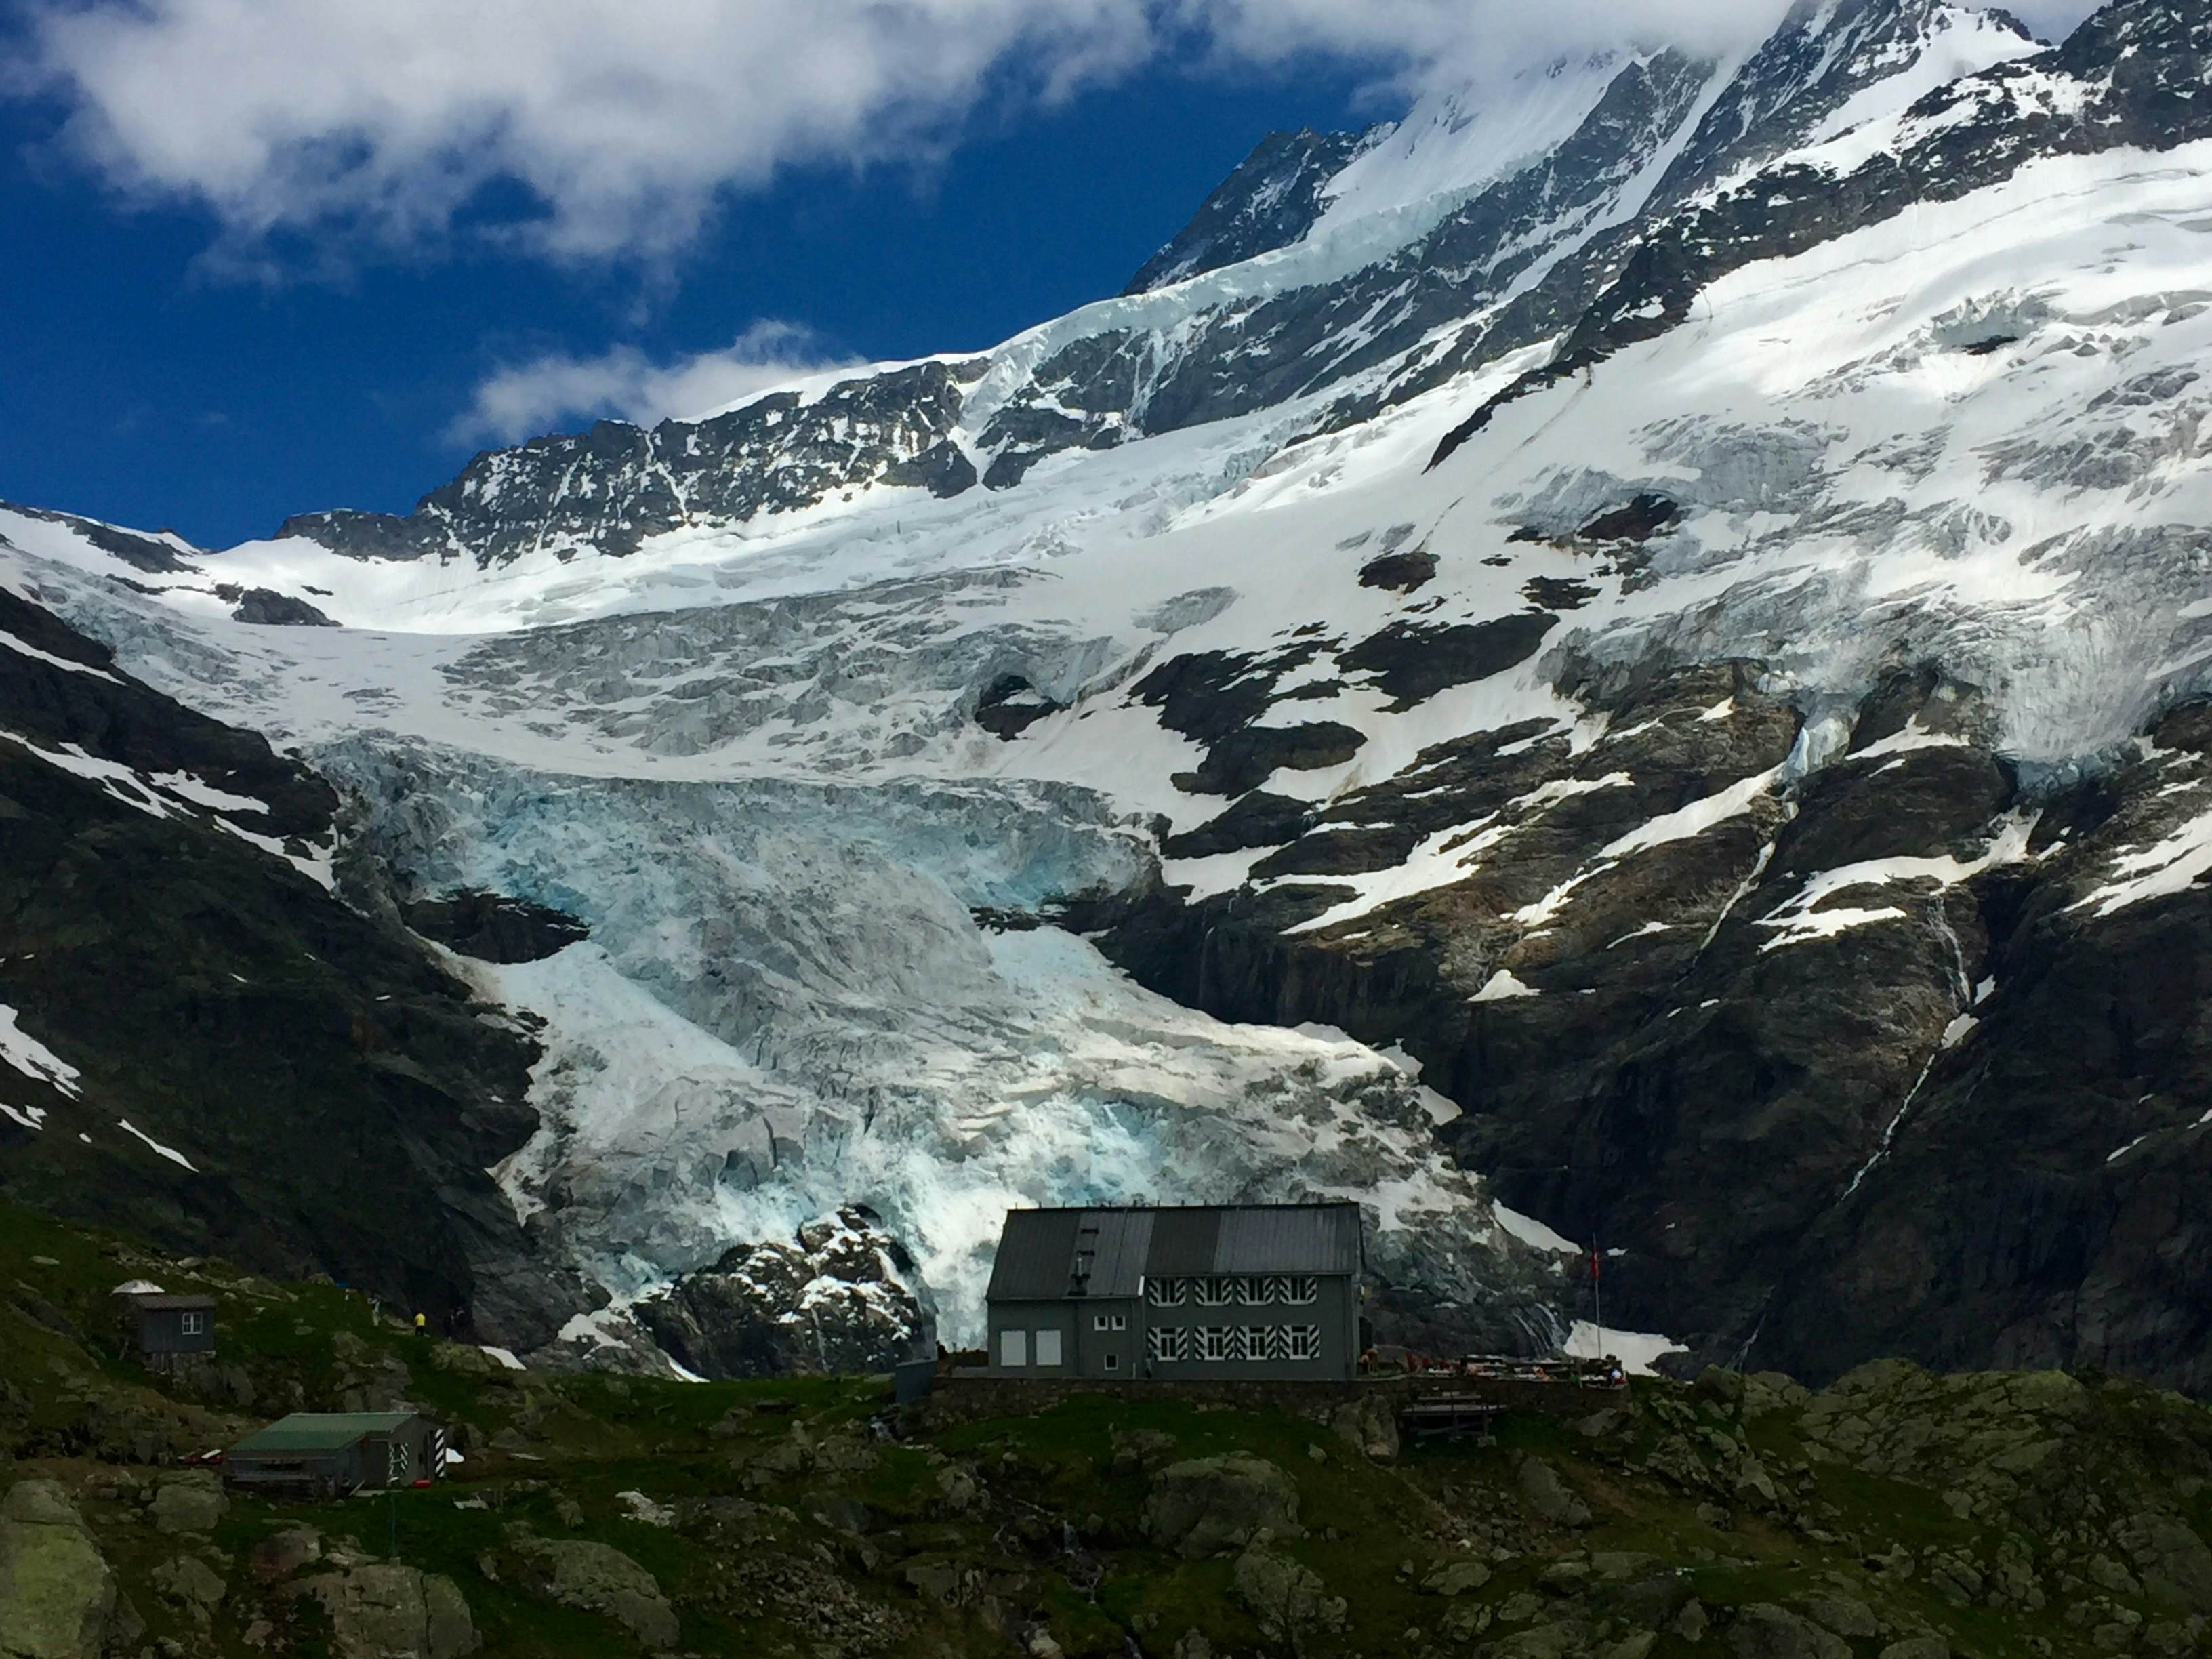 Die Glecksteinhütte vor dem Oberen Grindelwaldgletscher